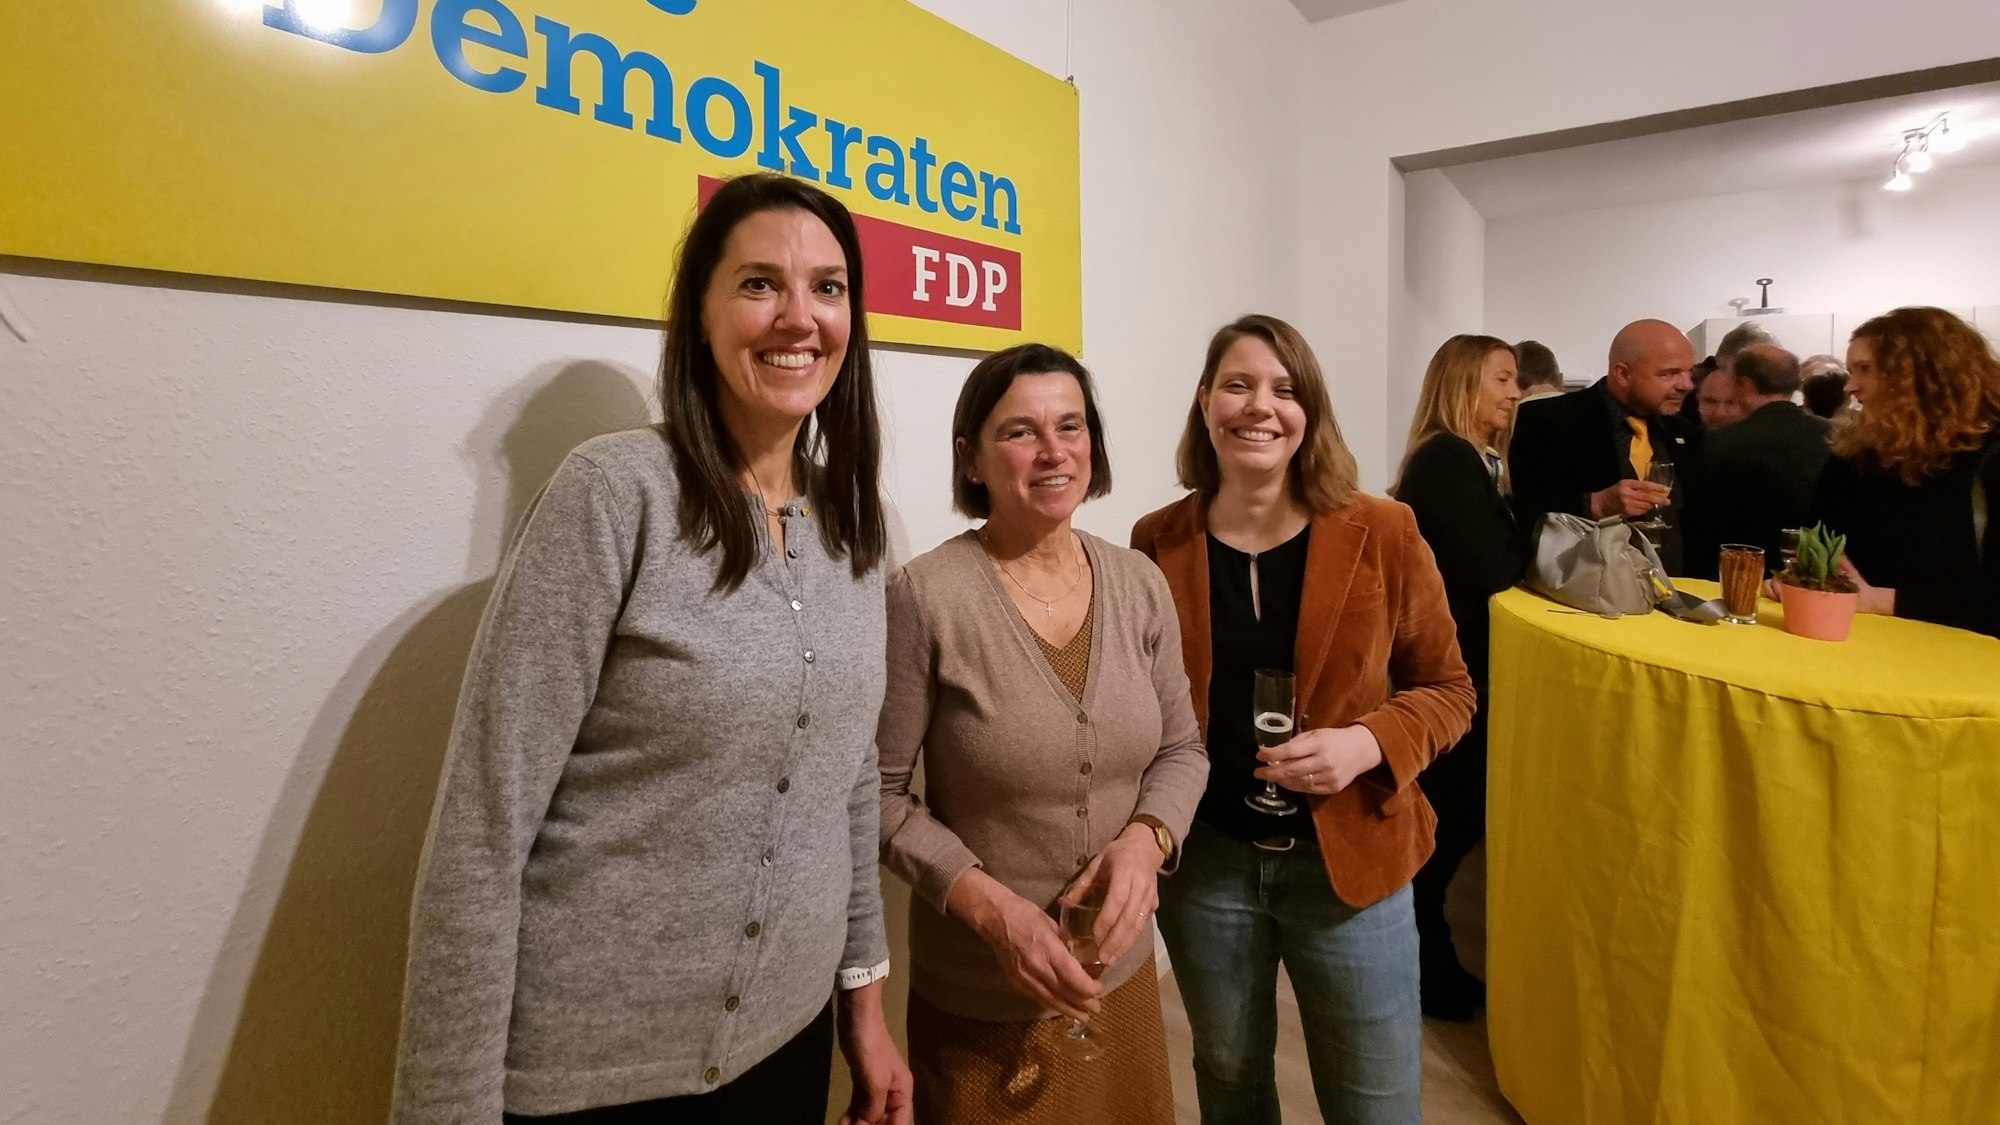 Drei Frauen stehen mit einem Glas Sekt in der Hand vor einem Banner mit der Aufschrift "Freie Demokraten - FDP" und lächeln in die Kamera.